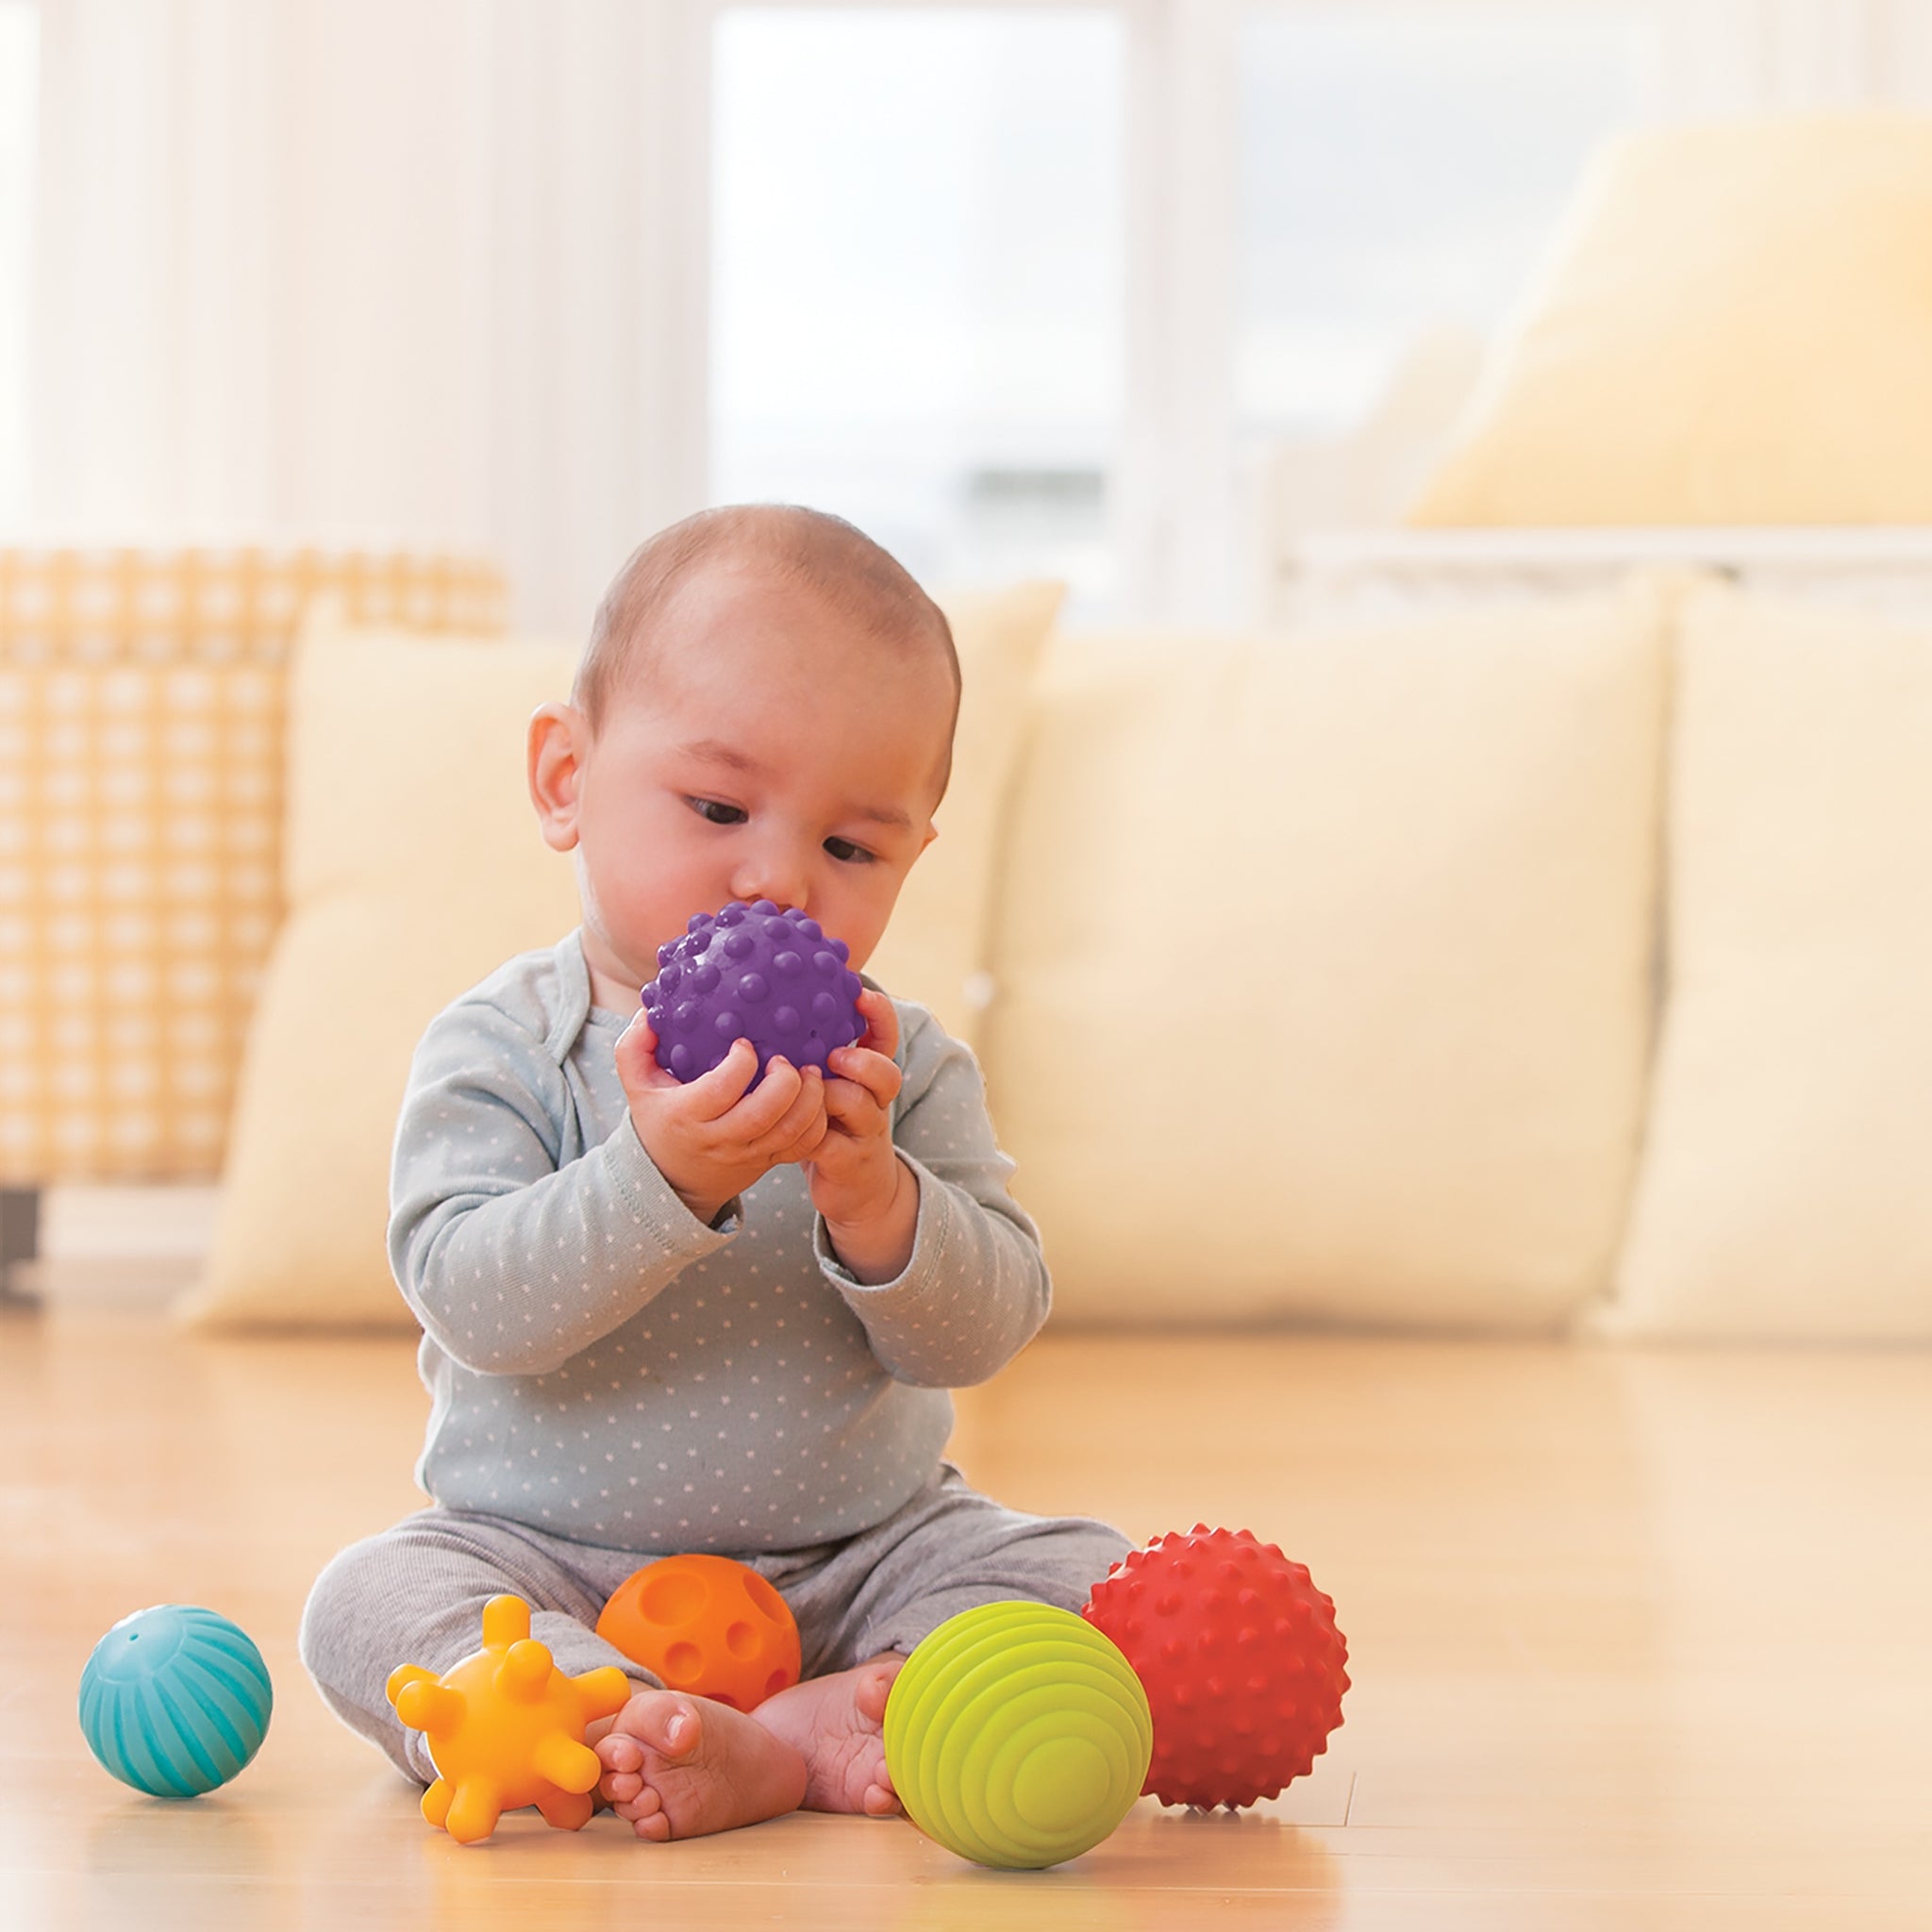 Мультисенсорный набор игрушек Infantino Balls, Blocks & Buddies Мячики, кубики и зверюшки (302021) - фото 5